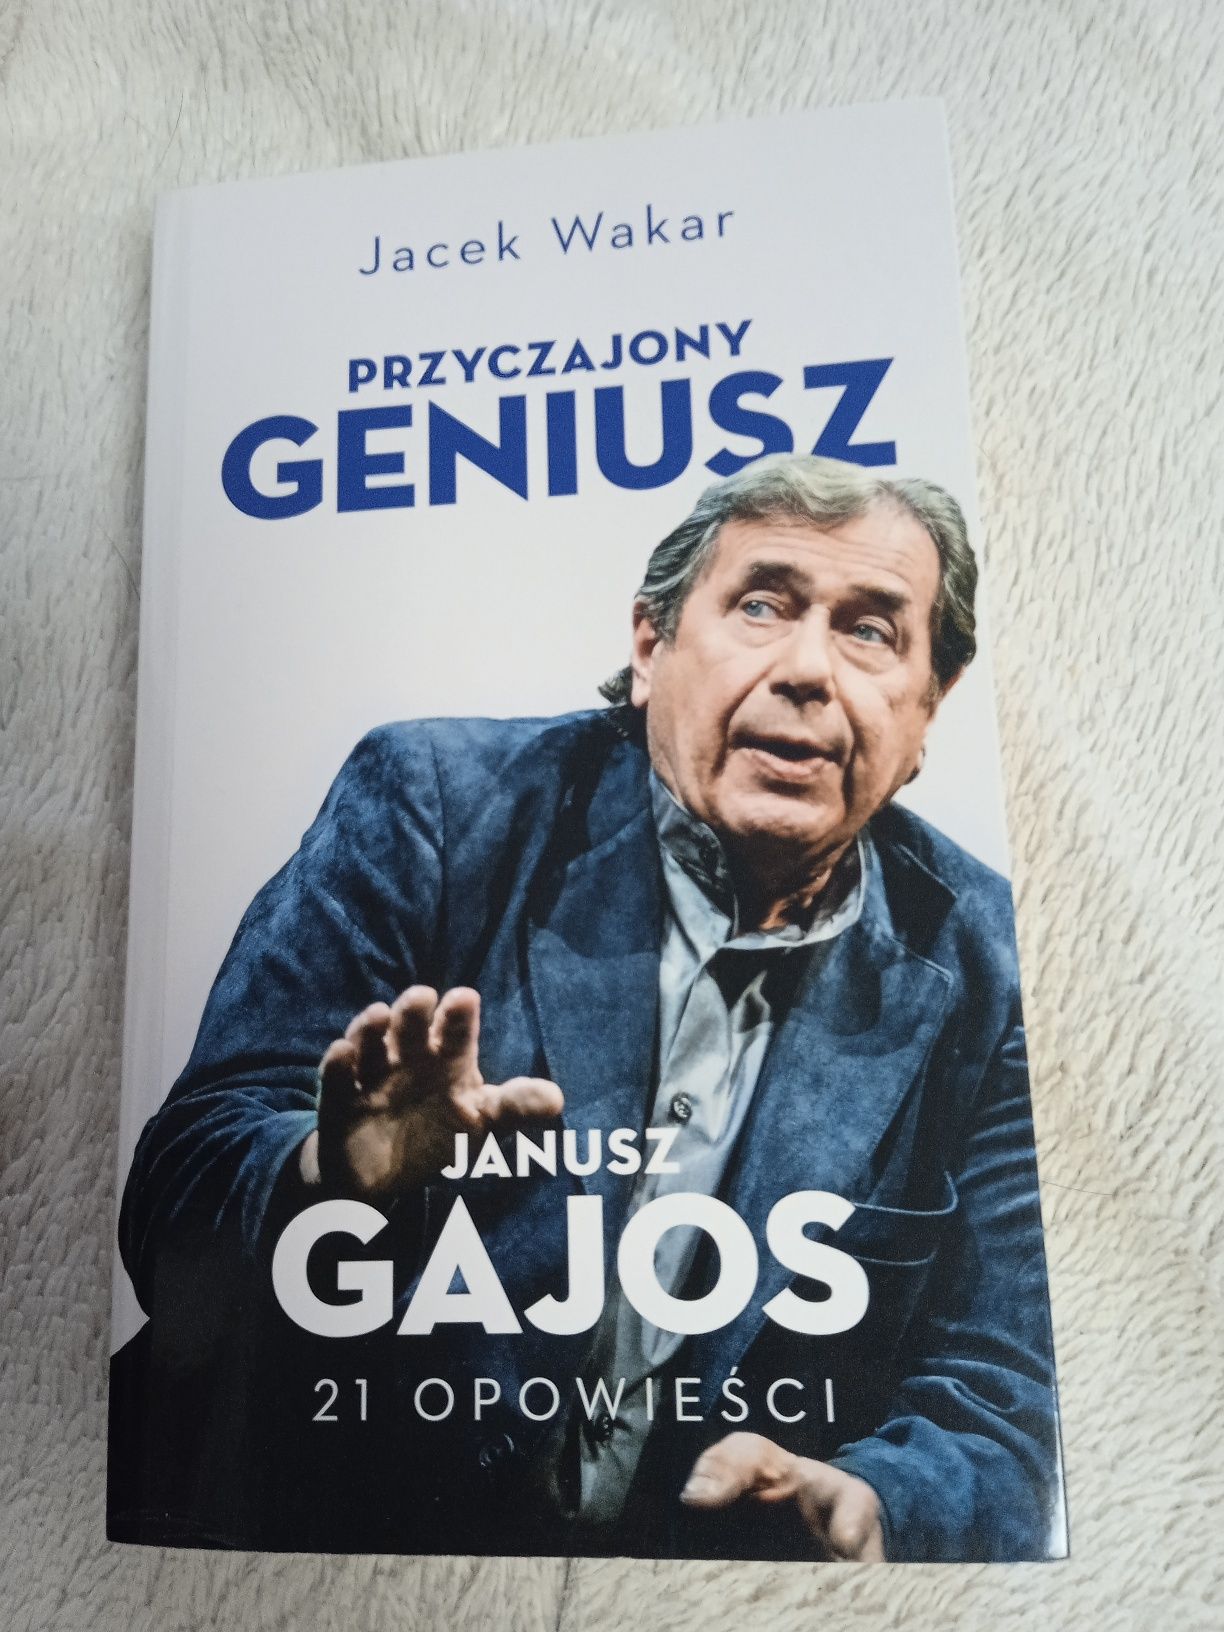 Opowieści o Janusz Gajosie "przyczajony genuusz